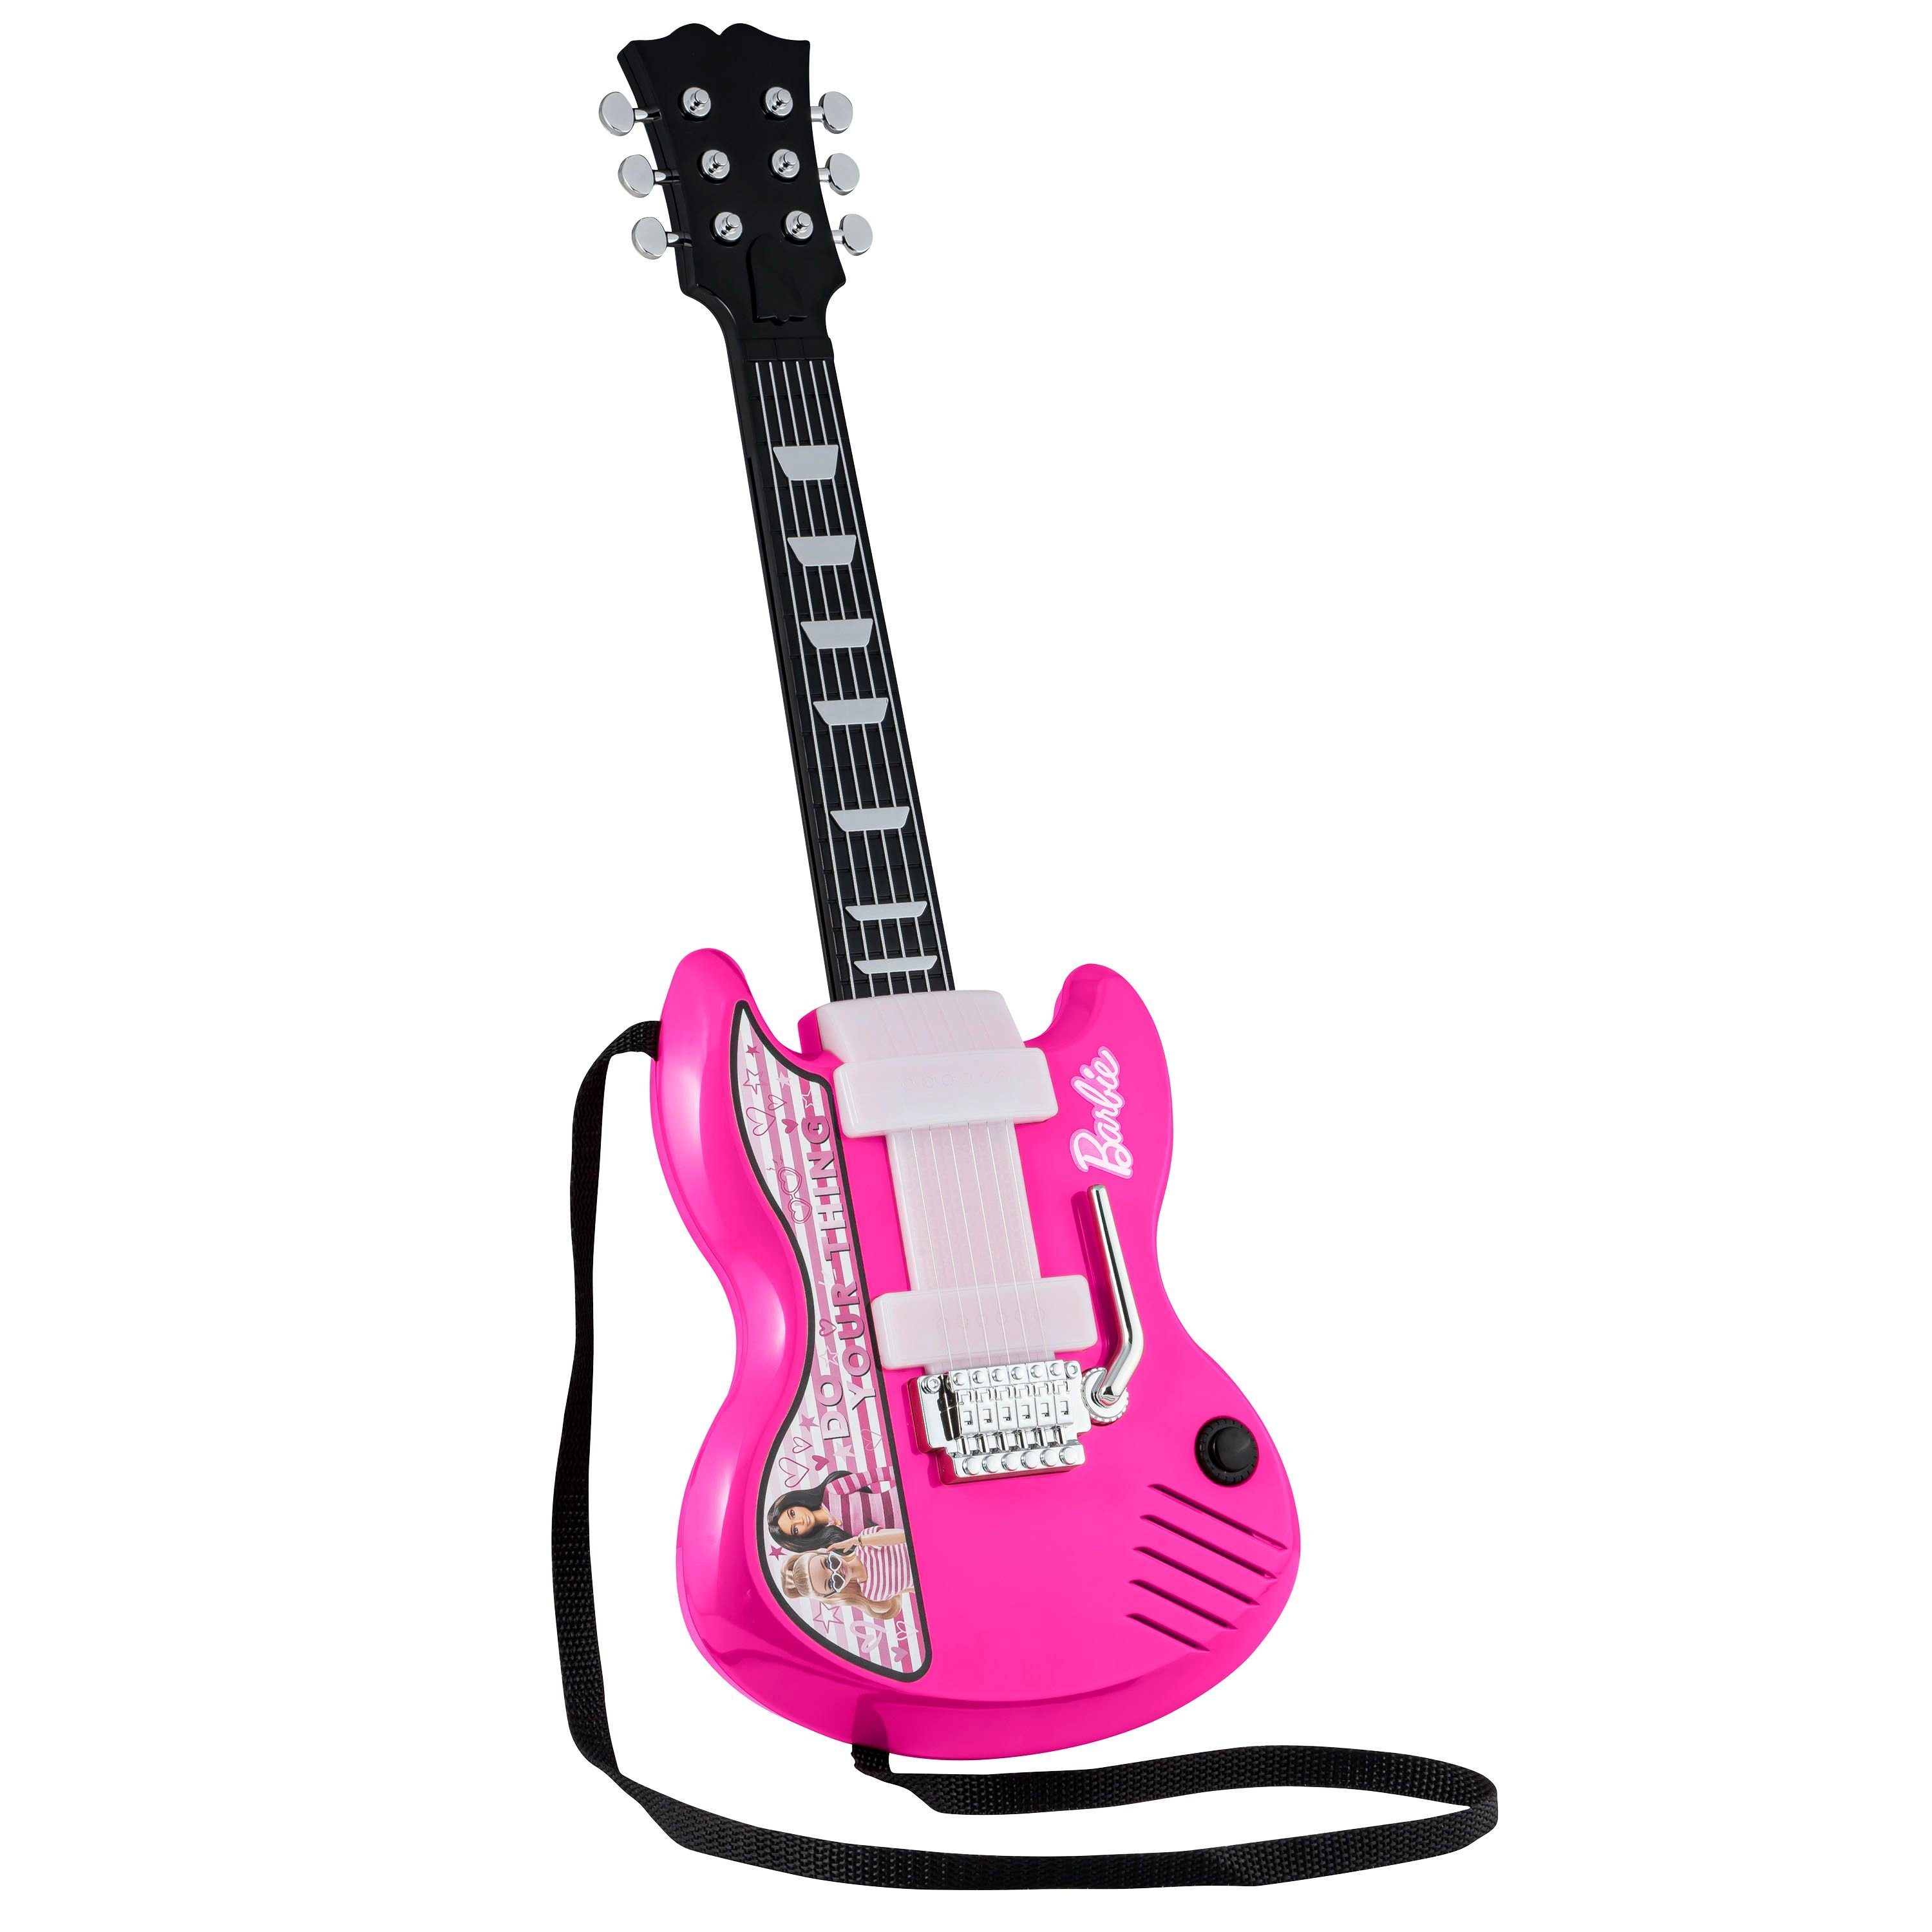 eKids Kindergitarre »Barbie Kids Gitarre mit integrierter Musik und Whammy  Bar«, mit Tragegurt, Whammy-Bar und einziehbarem Hals online kaufen | OTTO